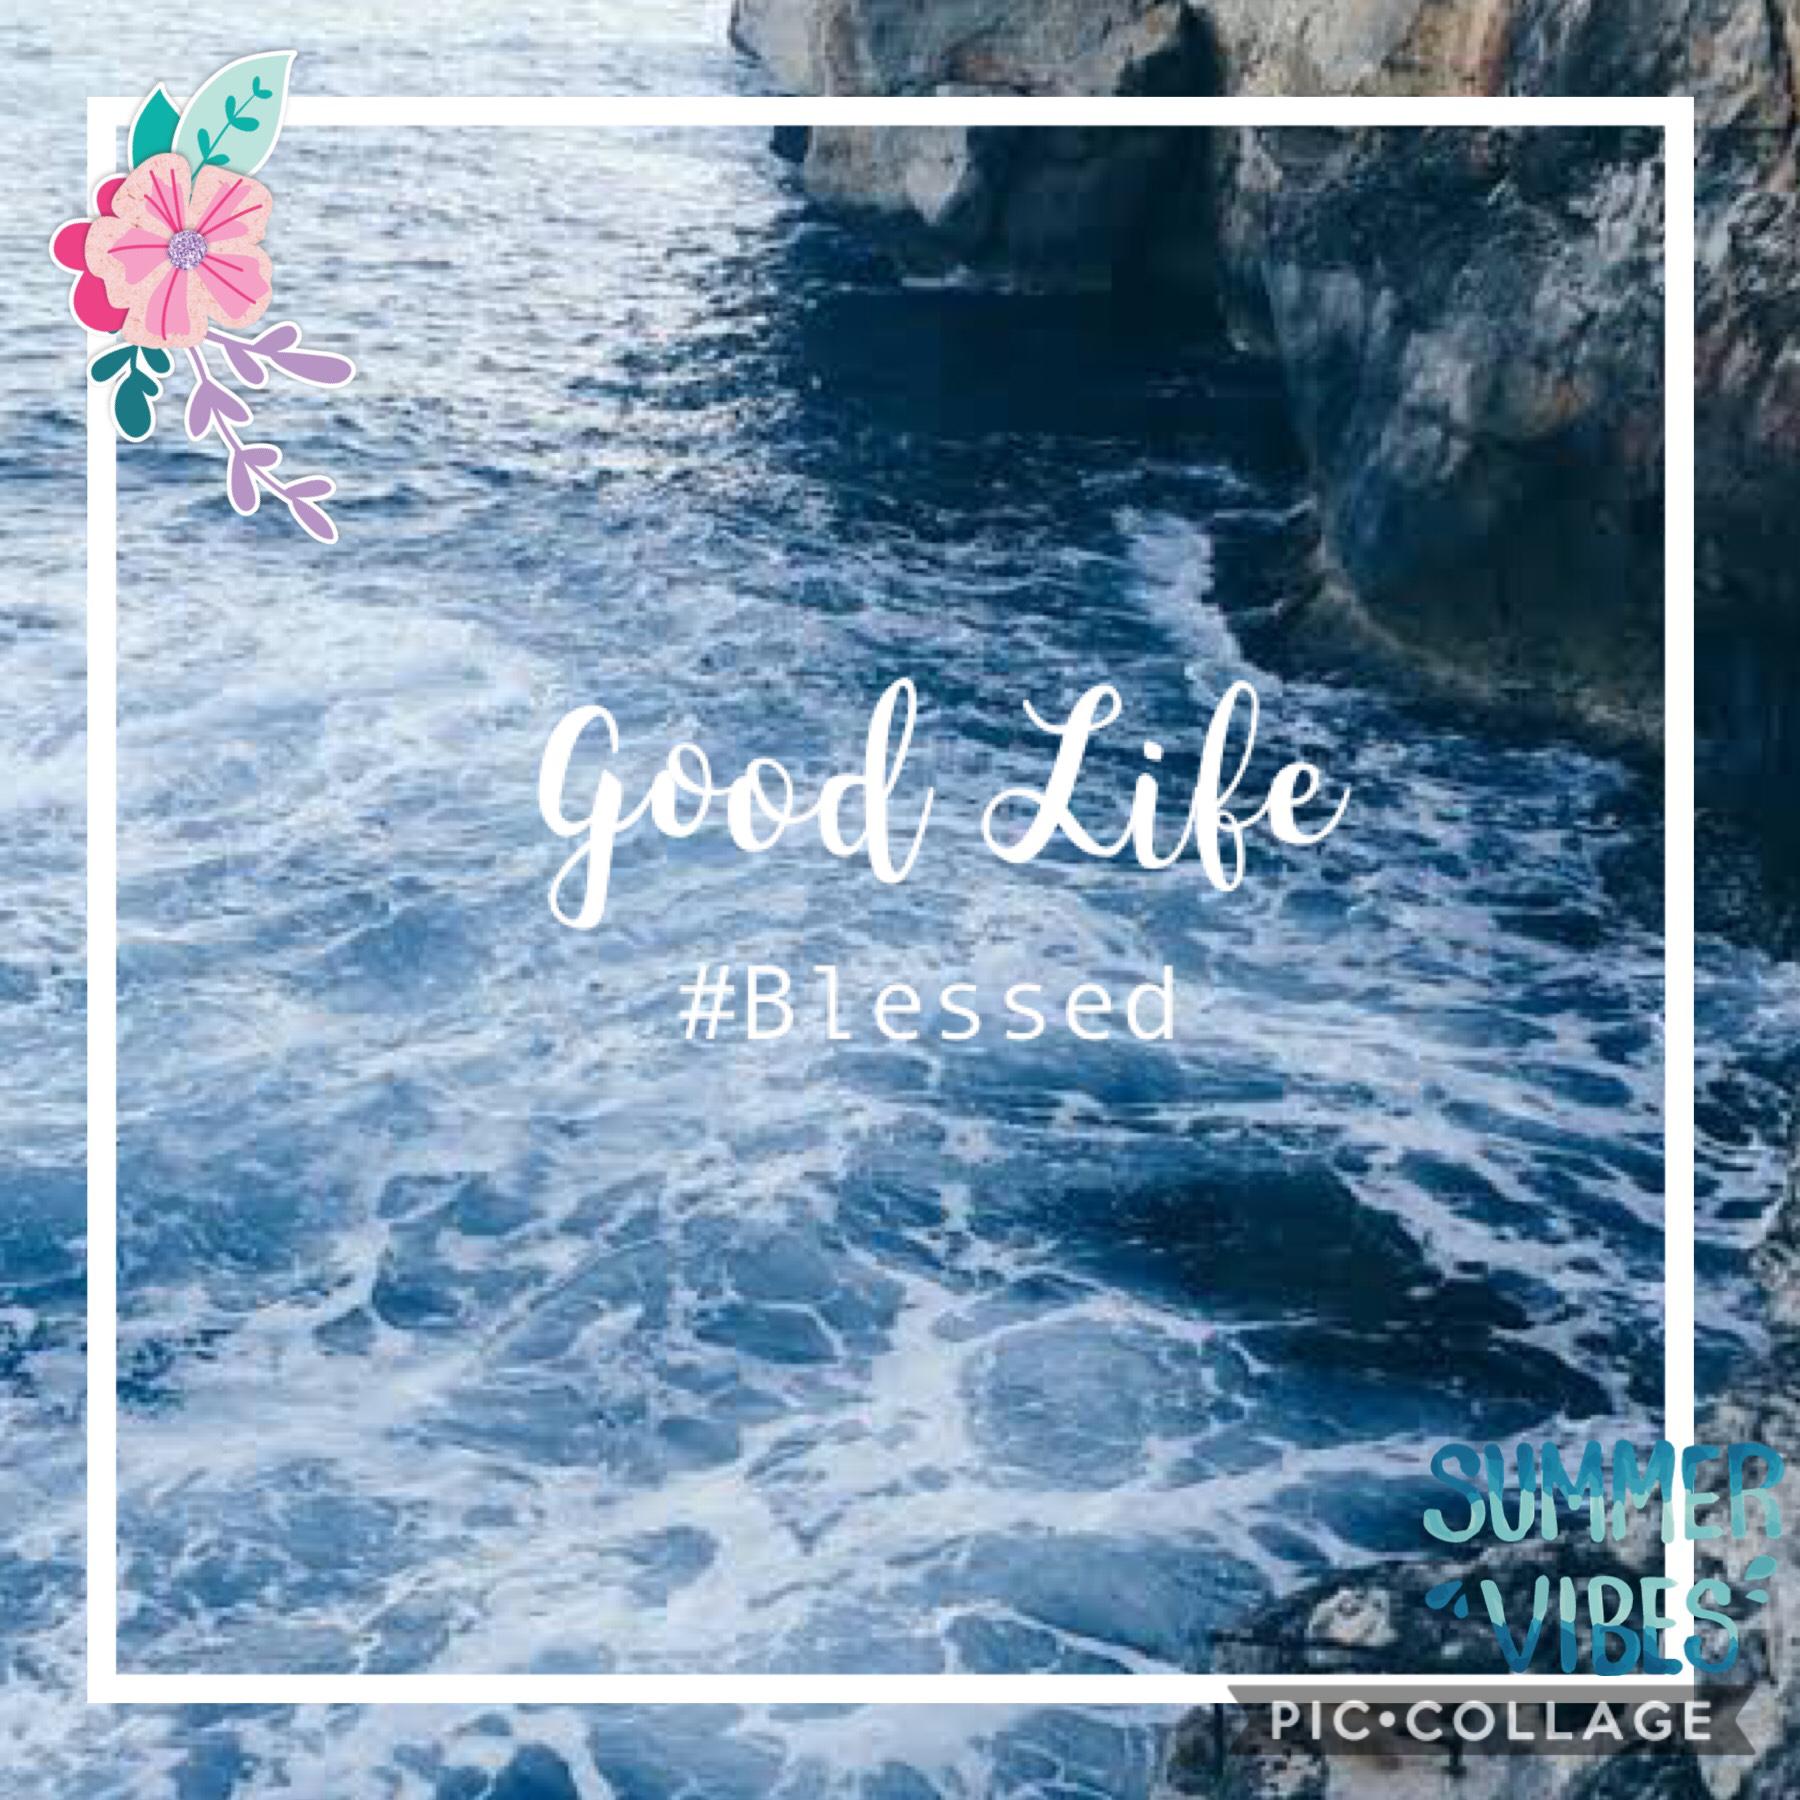 It’s a good life!❤️